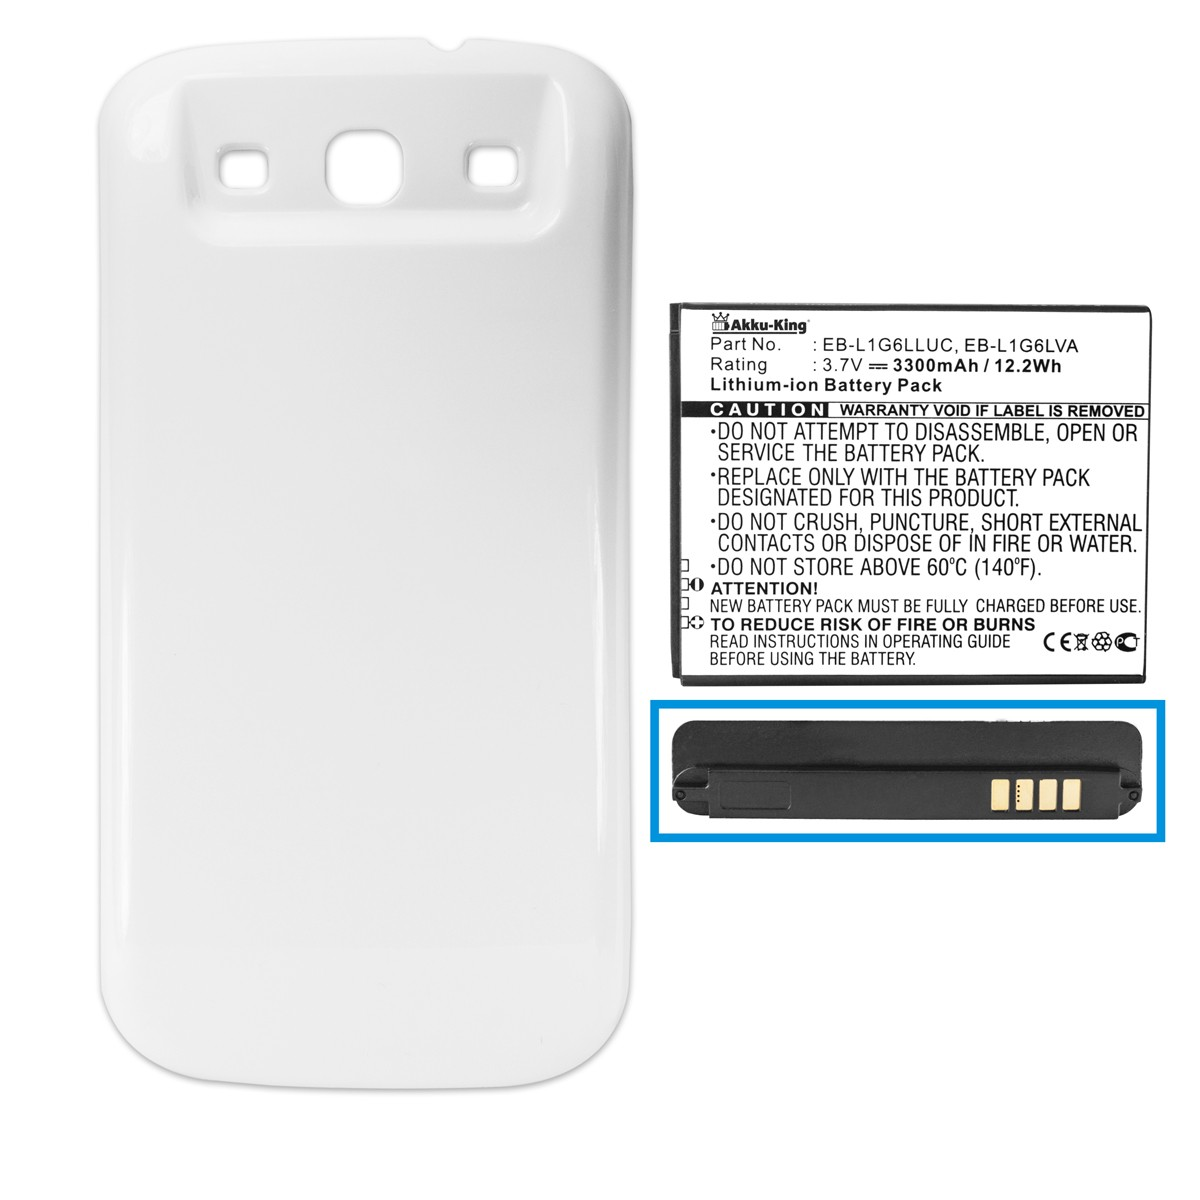 Volt, 3300mAh Akkudeckel AKKU-KING Samsung EB-K1G6UBUGSTD Li-Ion Akku mit kompatibel mit weiß Handy-Akku, 3.7